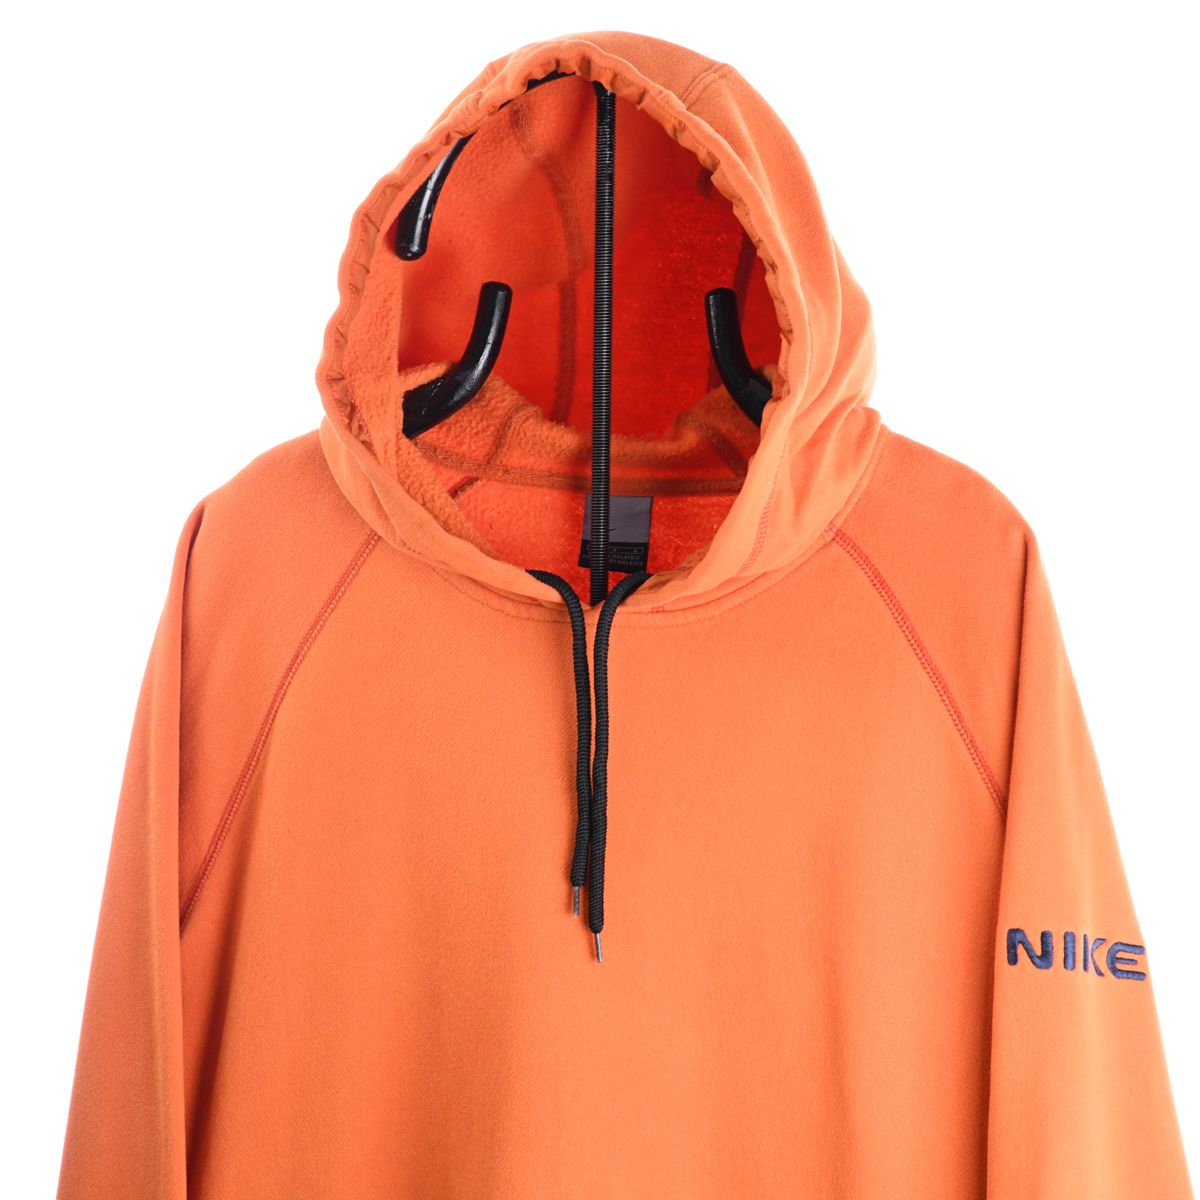 Nike Early 2000s Orange Hoodie